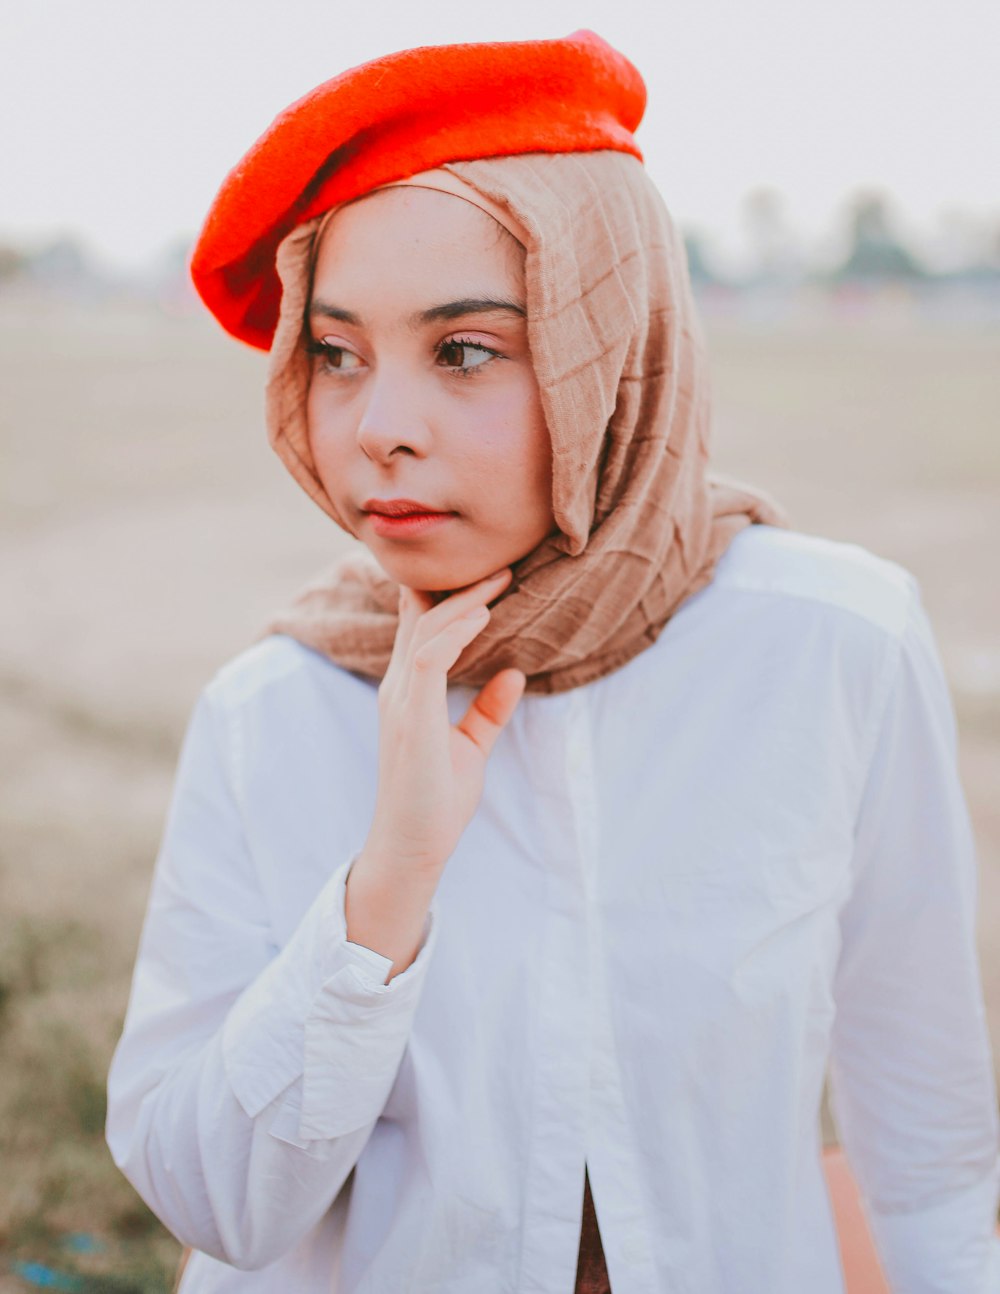 fotografia ravvicinata di donna che indossa l'hijab